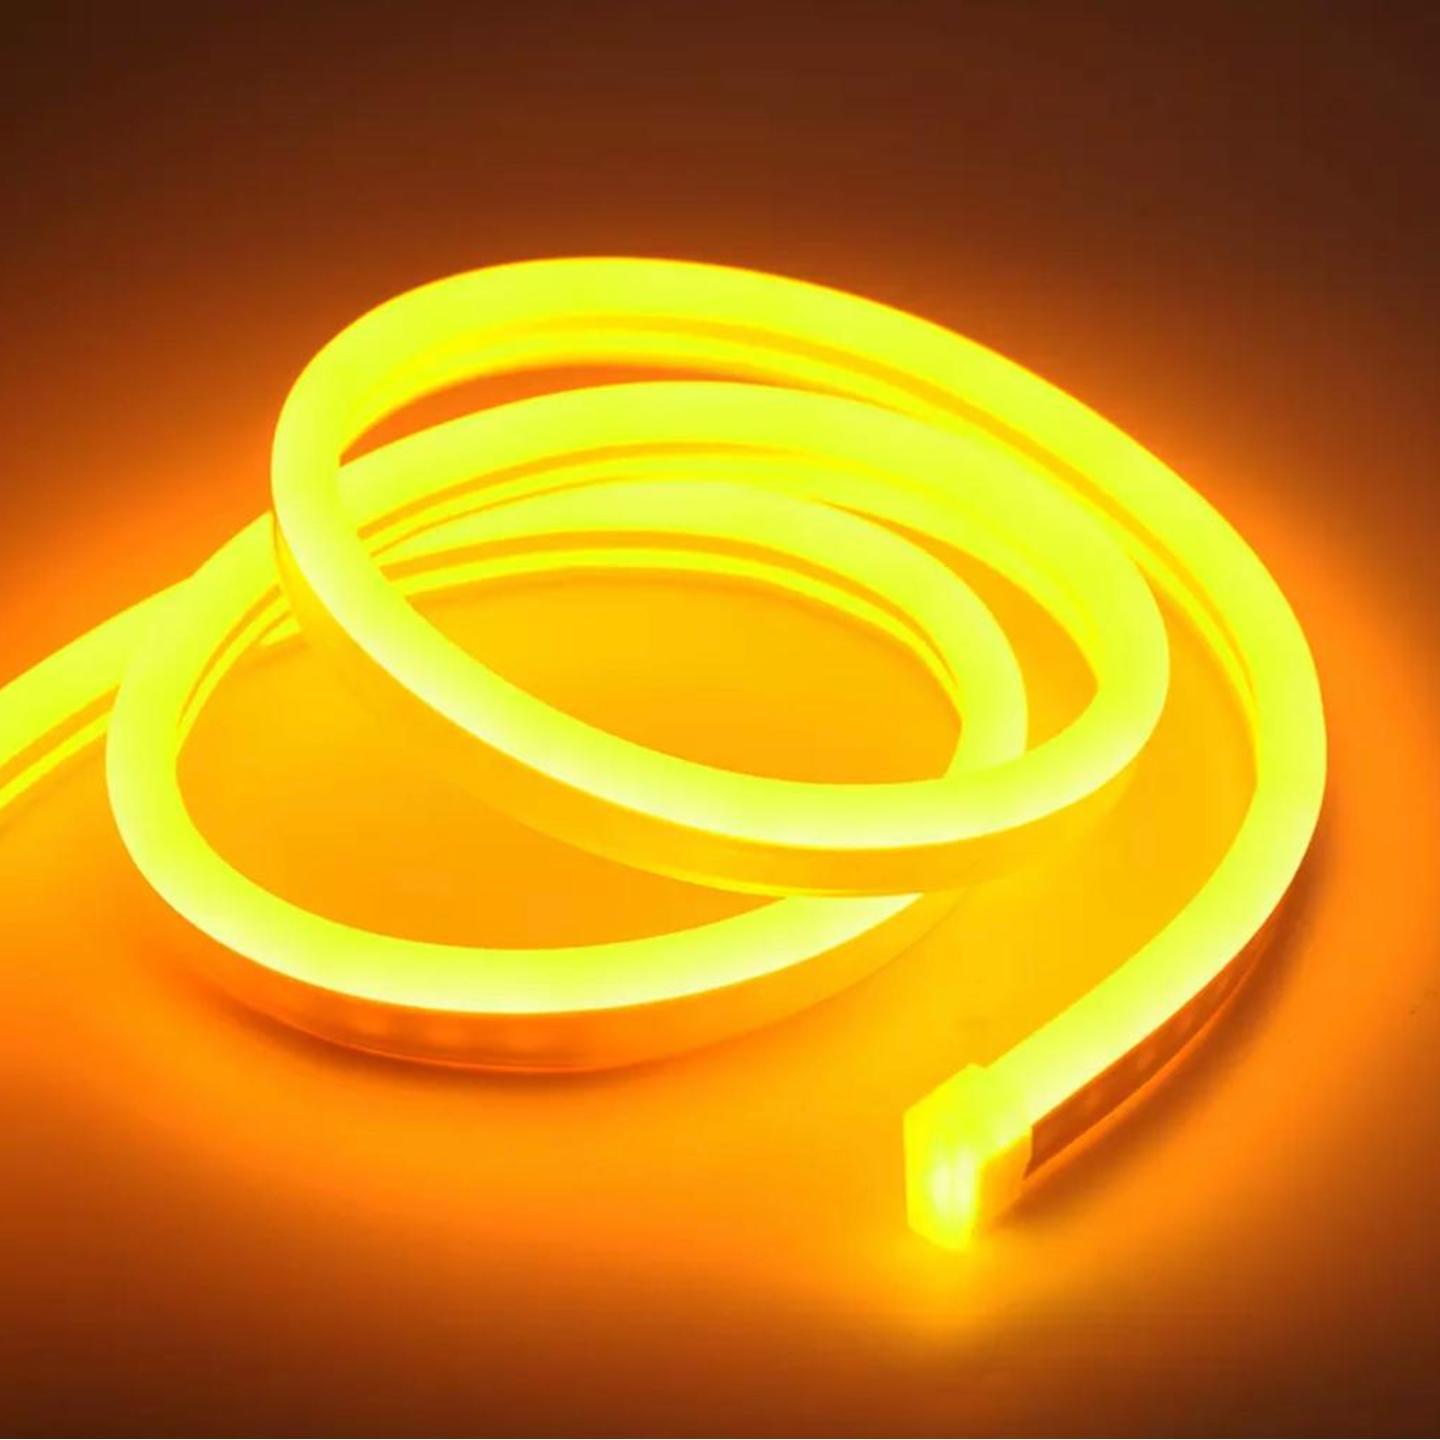 Waterproof Flexible LED Neon Rope Light per meter